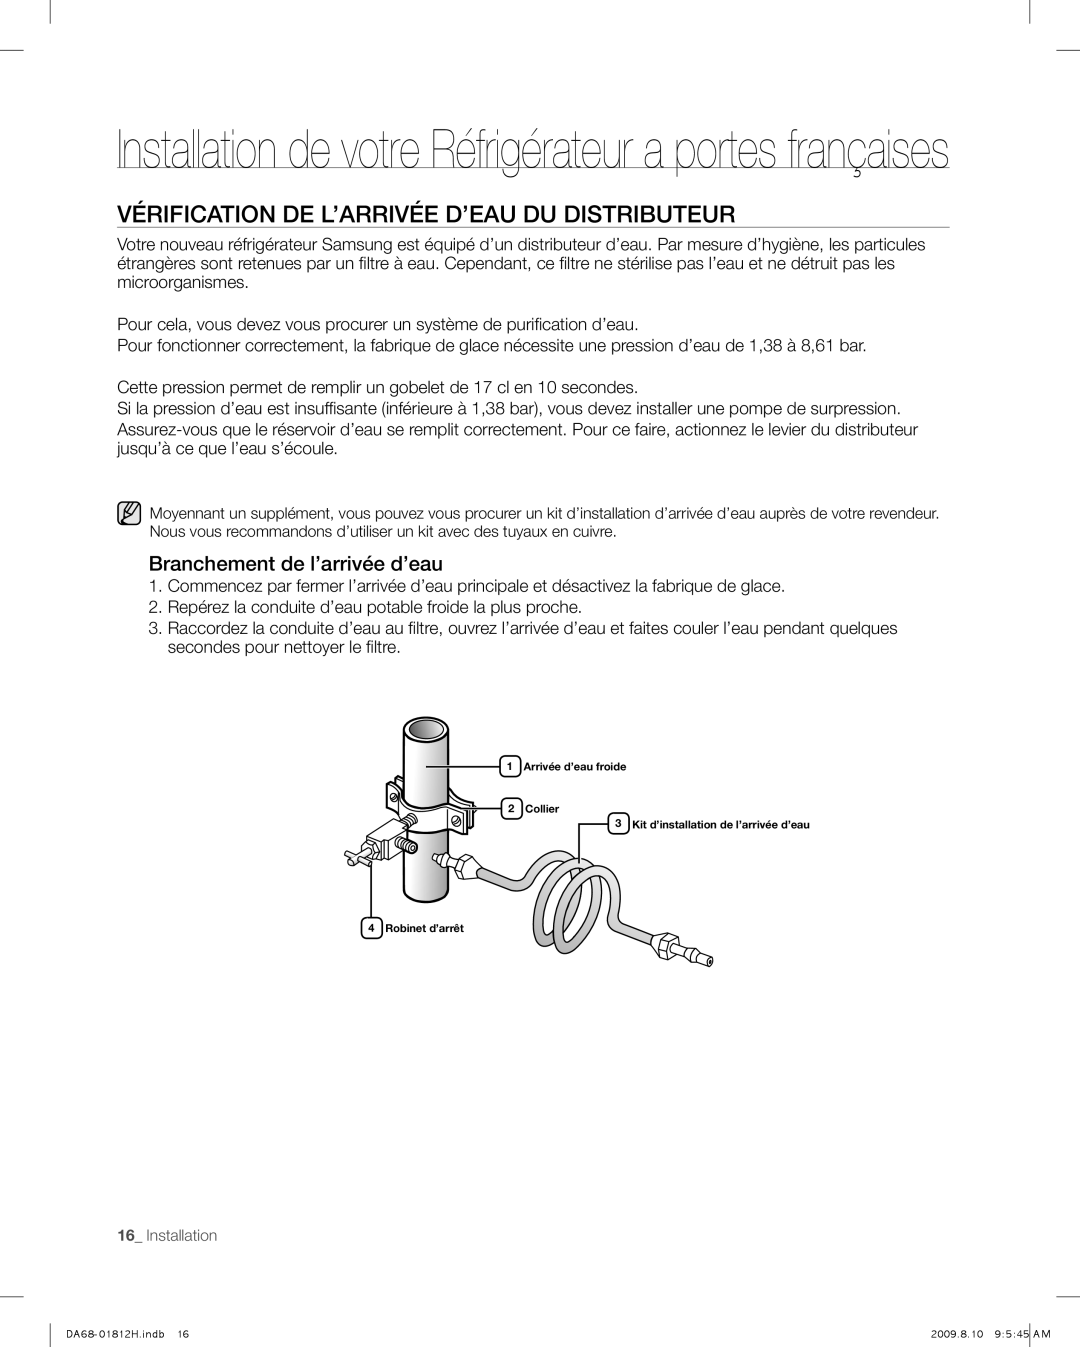 Samsung RF263 user manual Vérification De L’Arrivée D’Eau Du Distributeur, Branchement de l’arrivée d’eau 